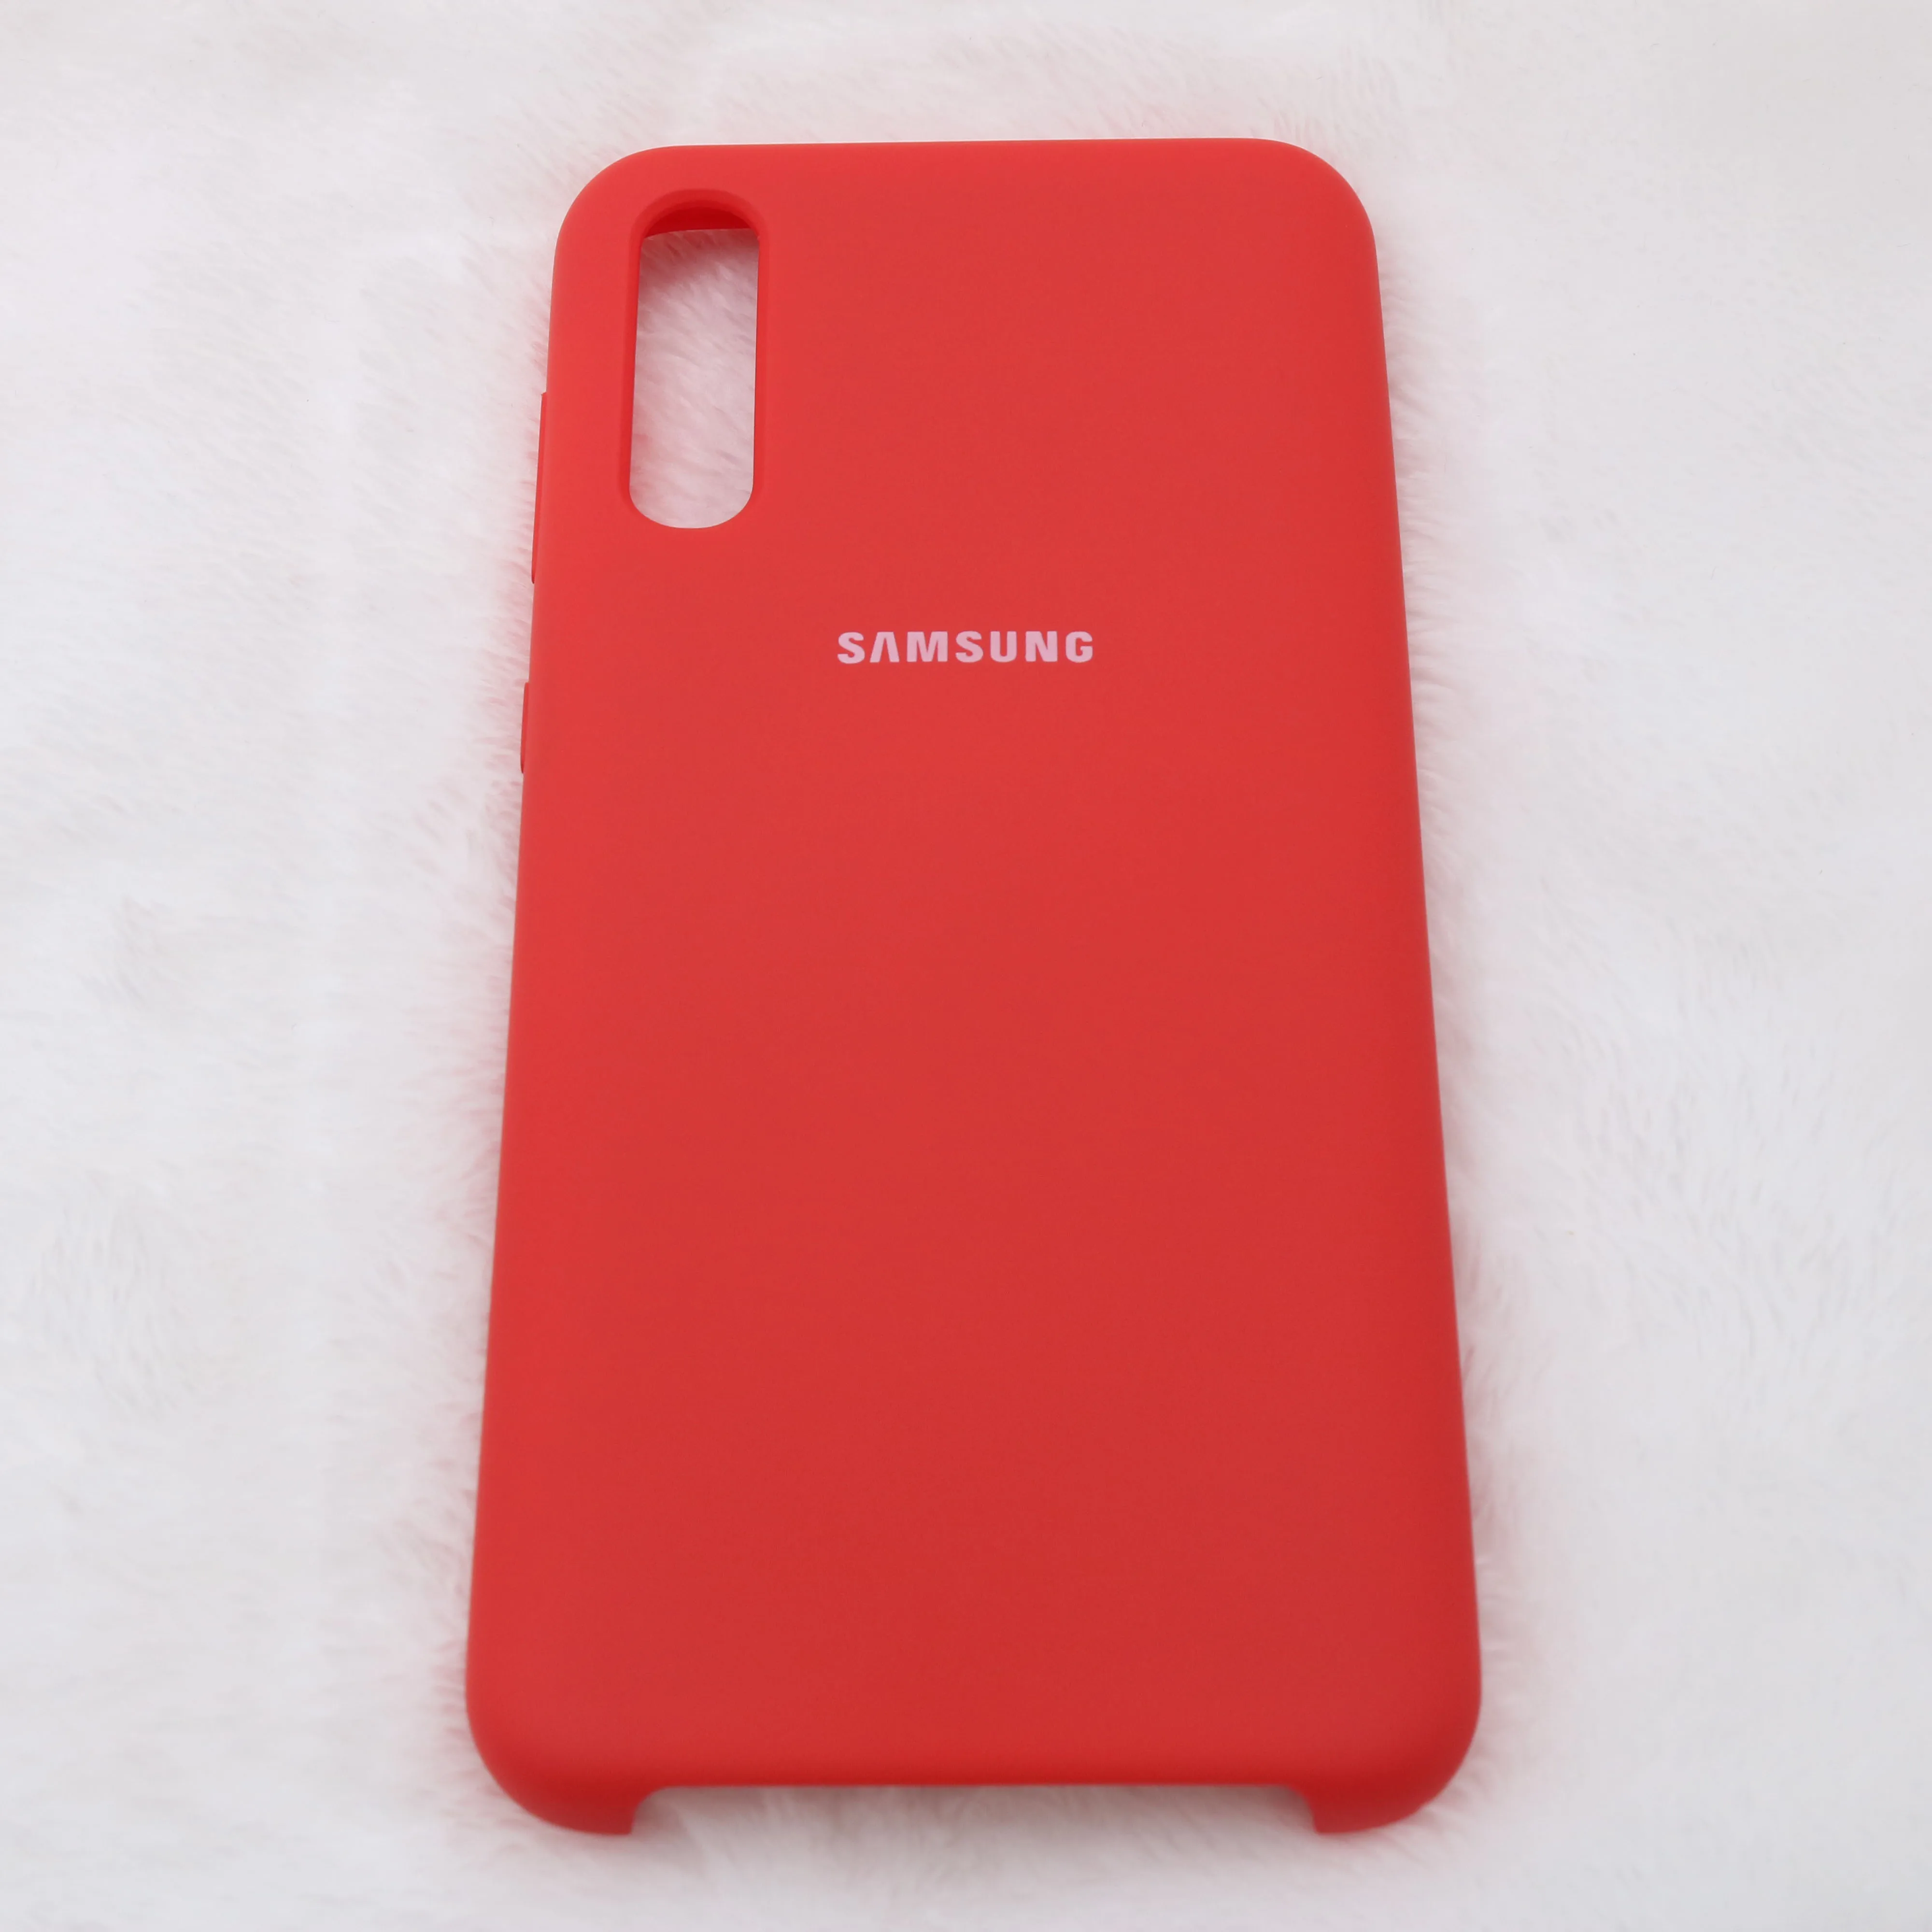 Samsung A50 Чехол жидкий силикон мягкий защитный samsung Galaxy A70 A50 A30 A10 A60 A40 A90 чехол для Galaxy A50 чехол